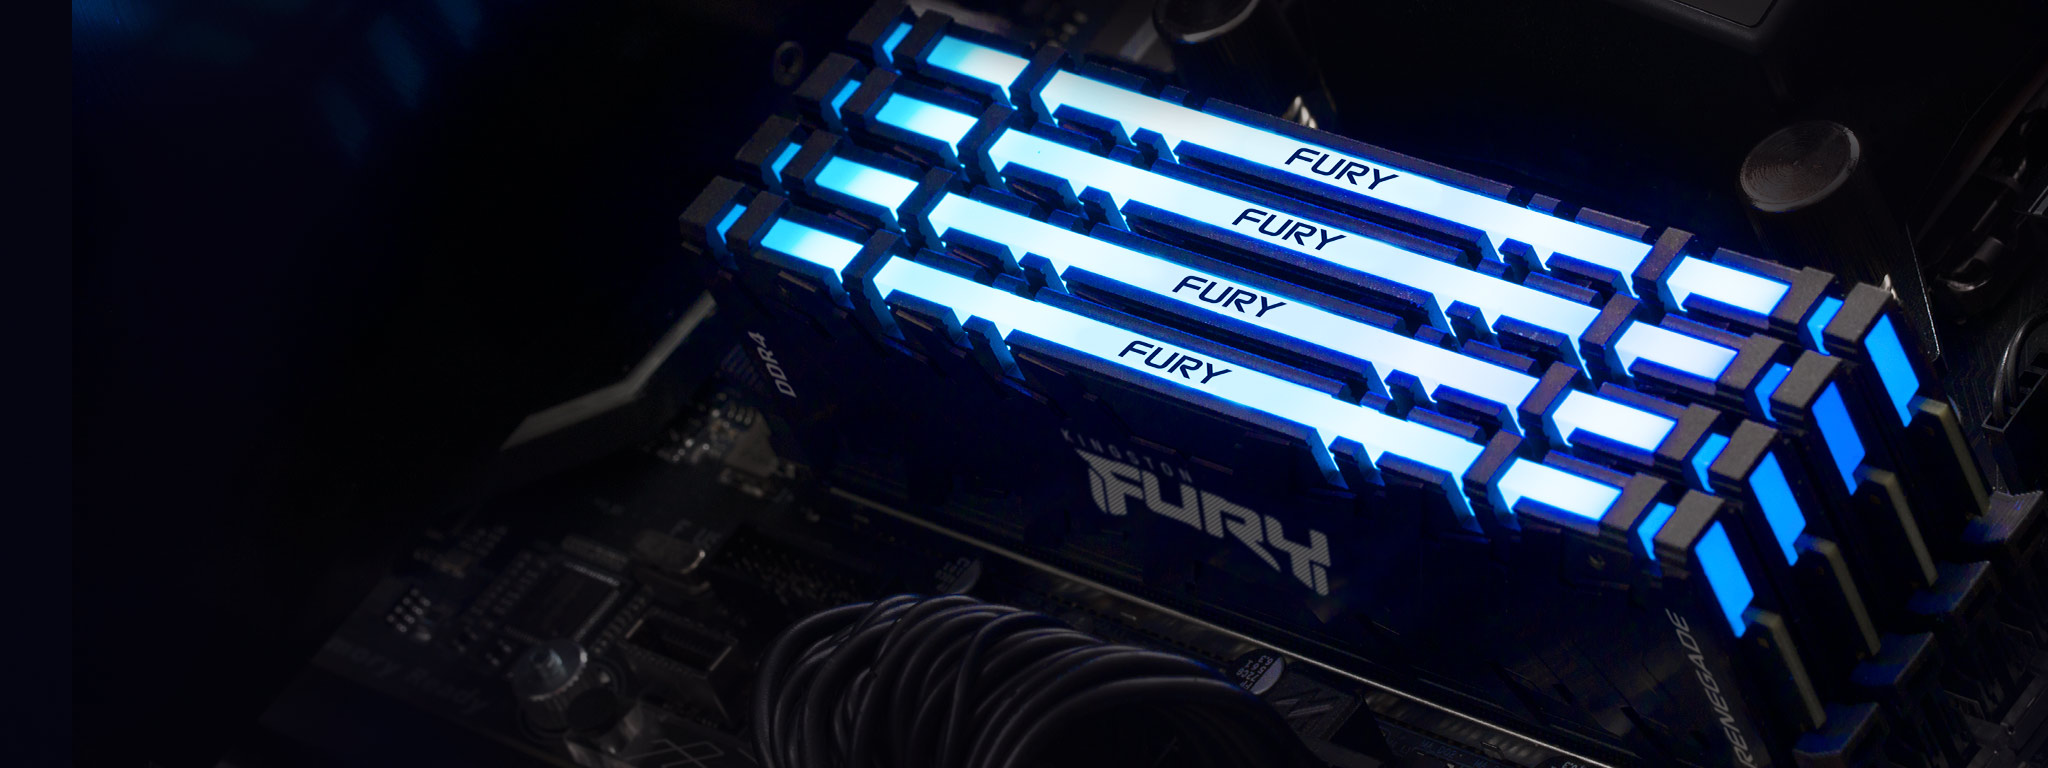 4 módulos de memoria Kingston FURY Renegade DDR4 RGB brillan en azul, montados en las ranuras de memoria de una placa madre